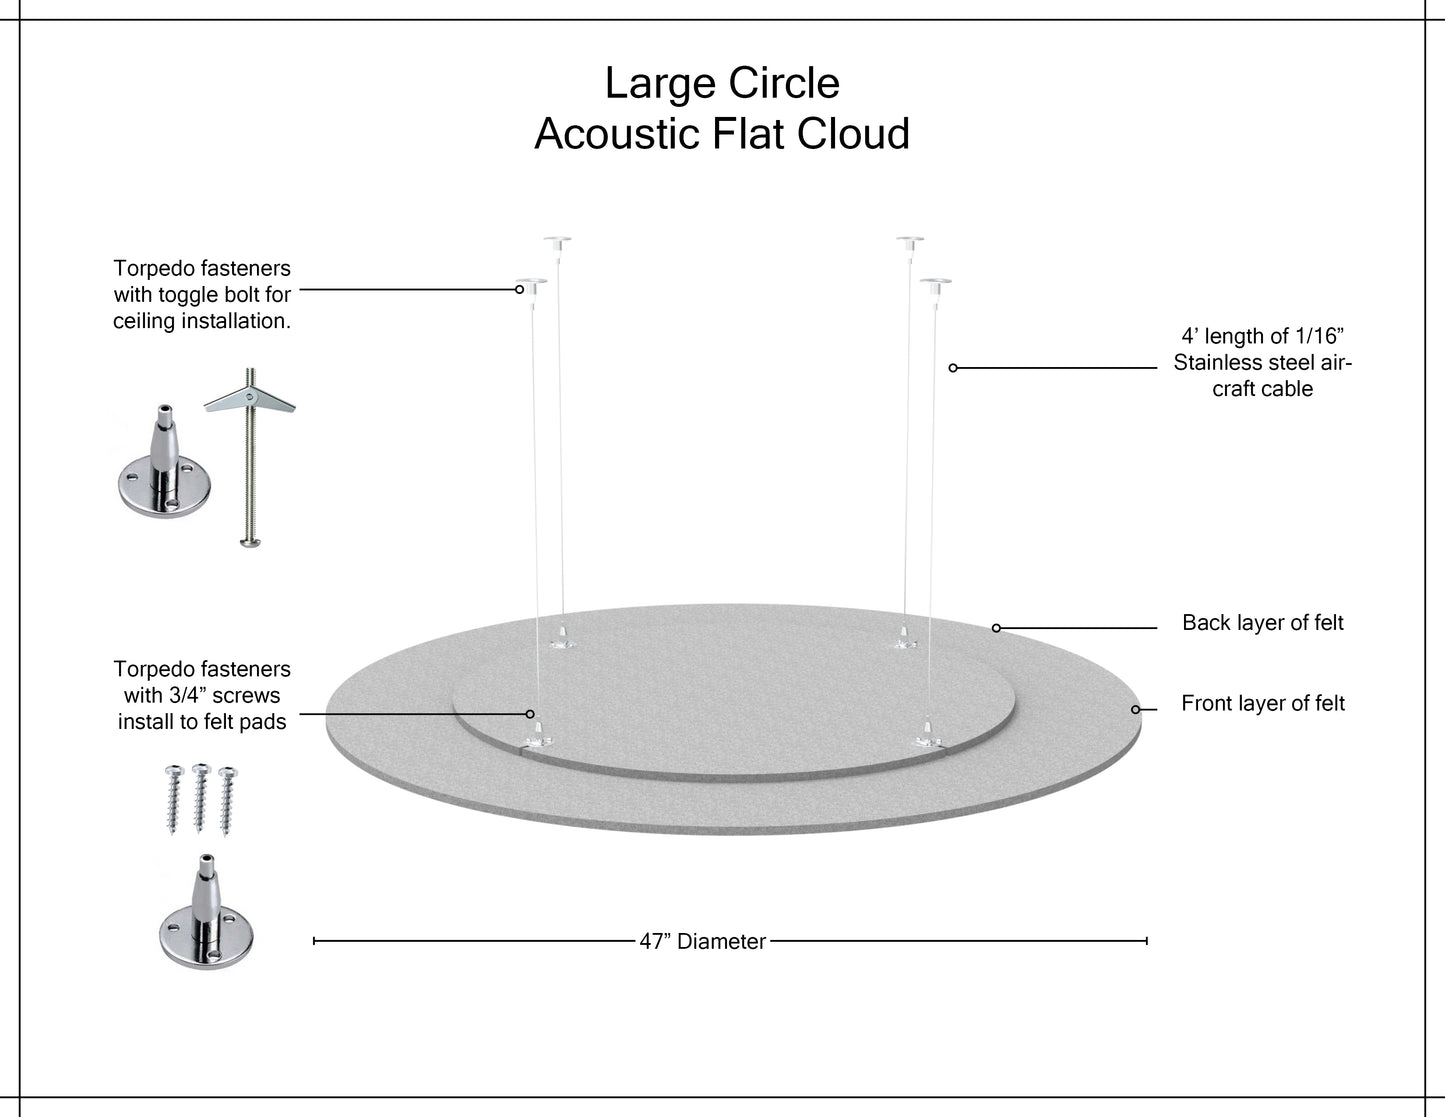 Acoustic Flat Cloud - Large Circle